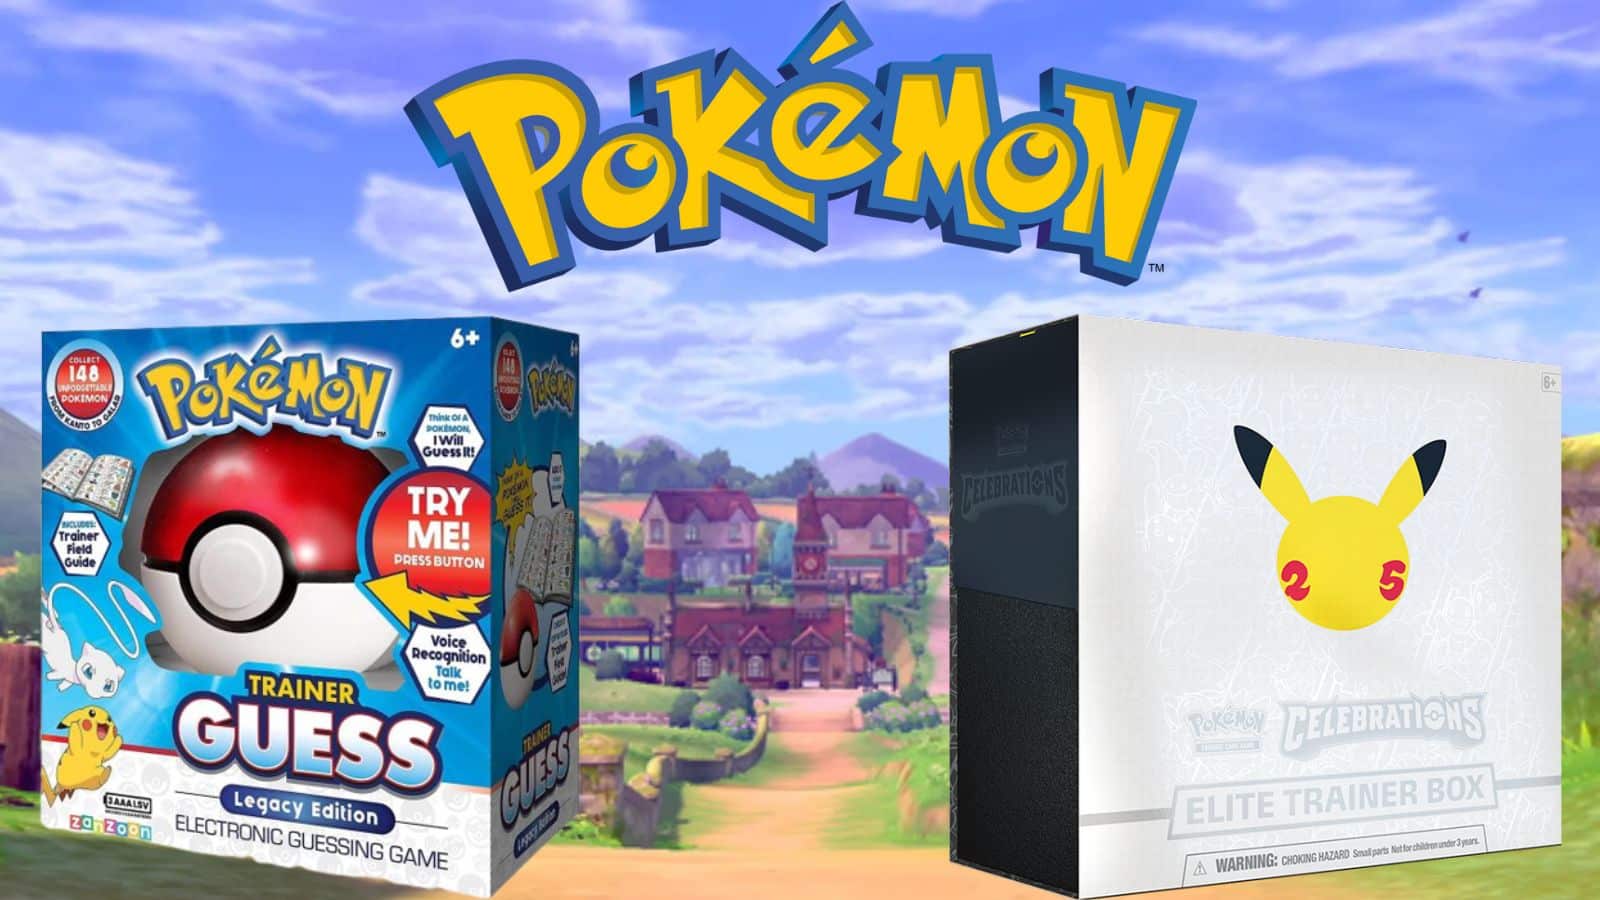 Pokemon Guess and Celebration Box